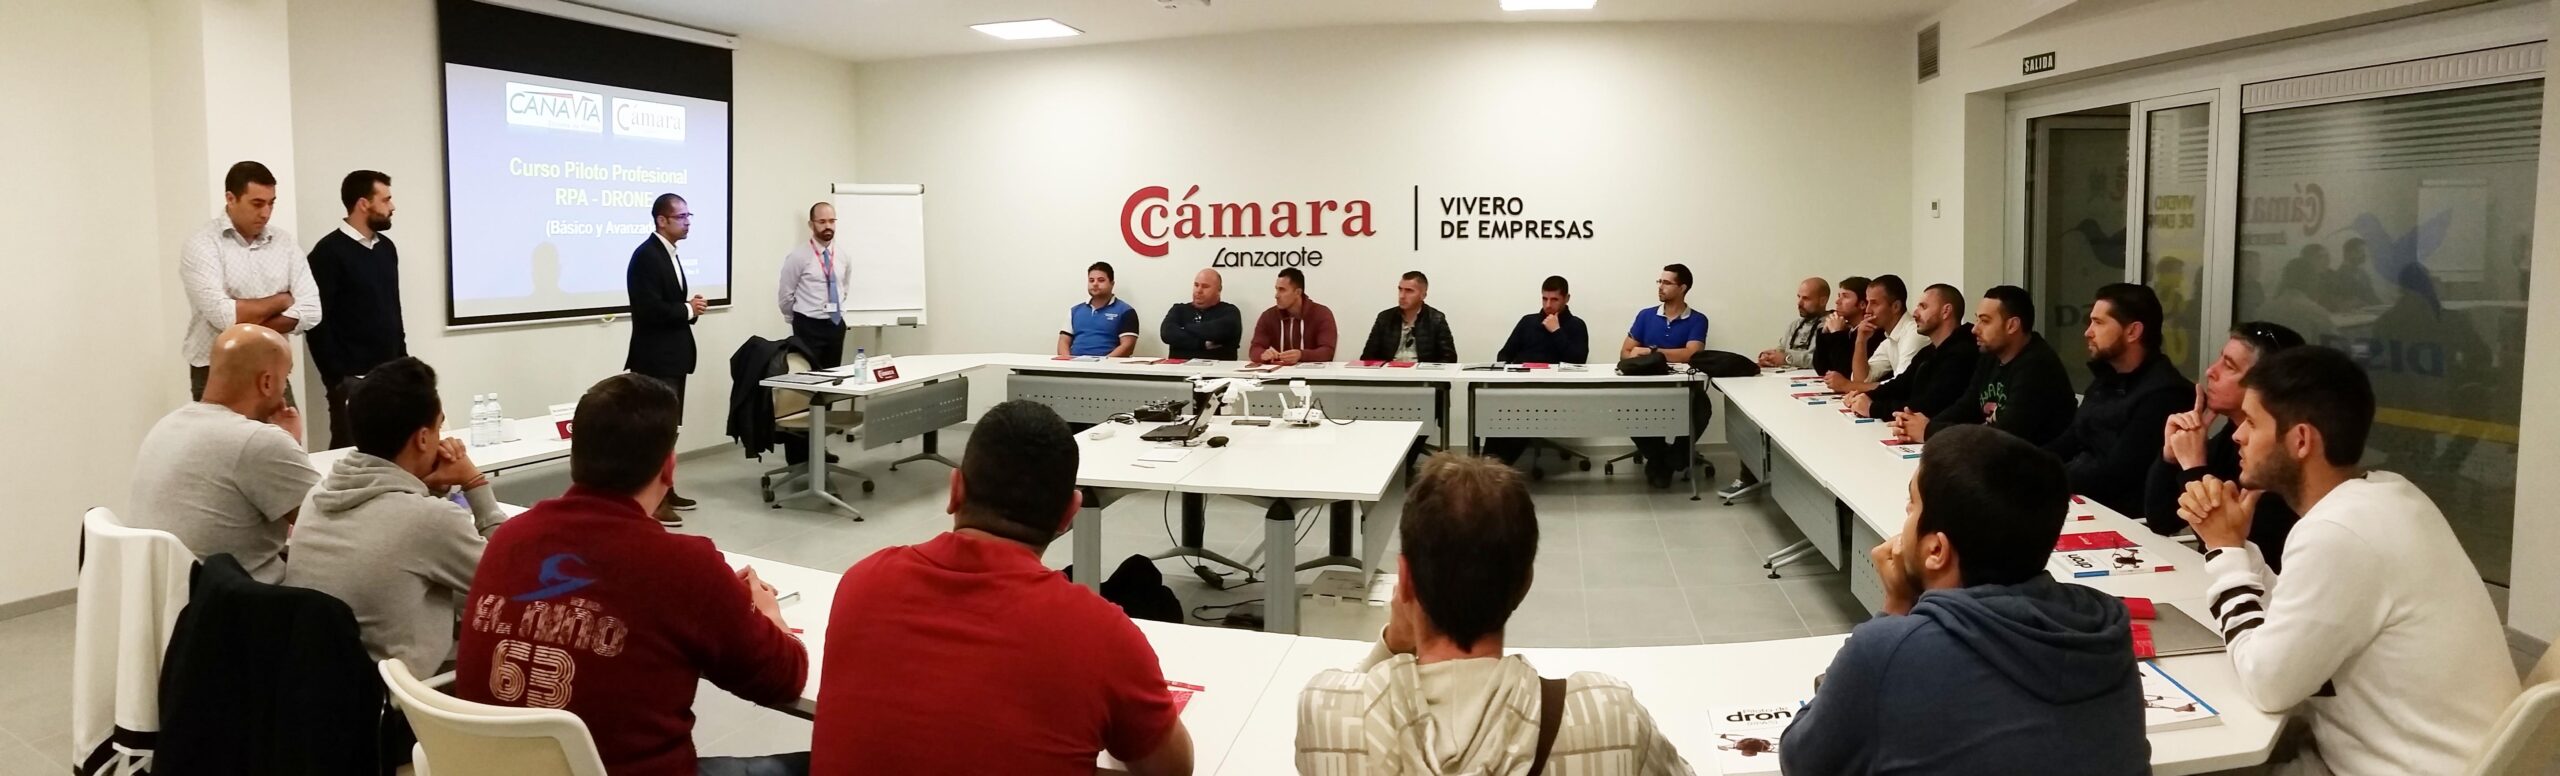 La primera promoción de pilotos profesionales de drones de Lanzarote comienza su formación en la Cámara